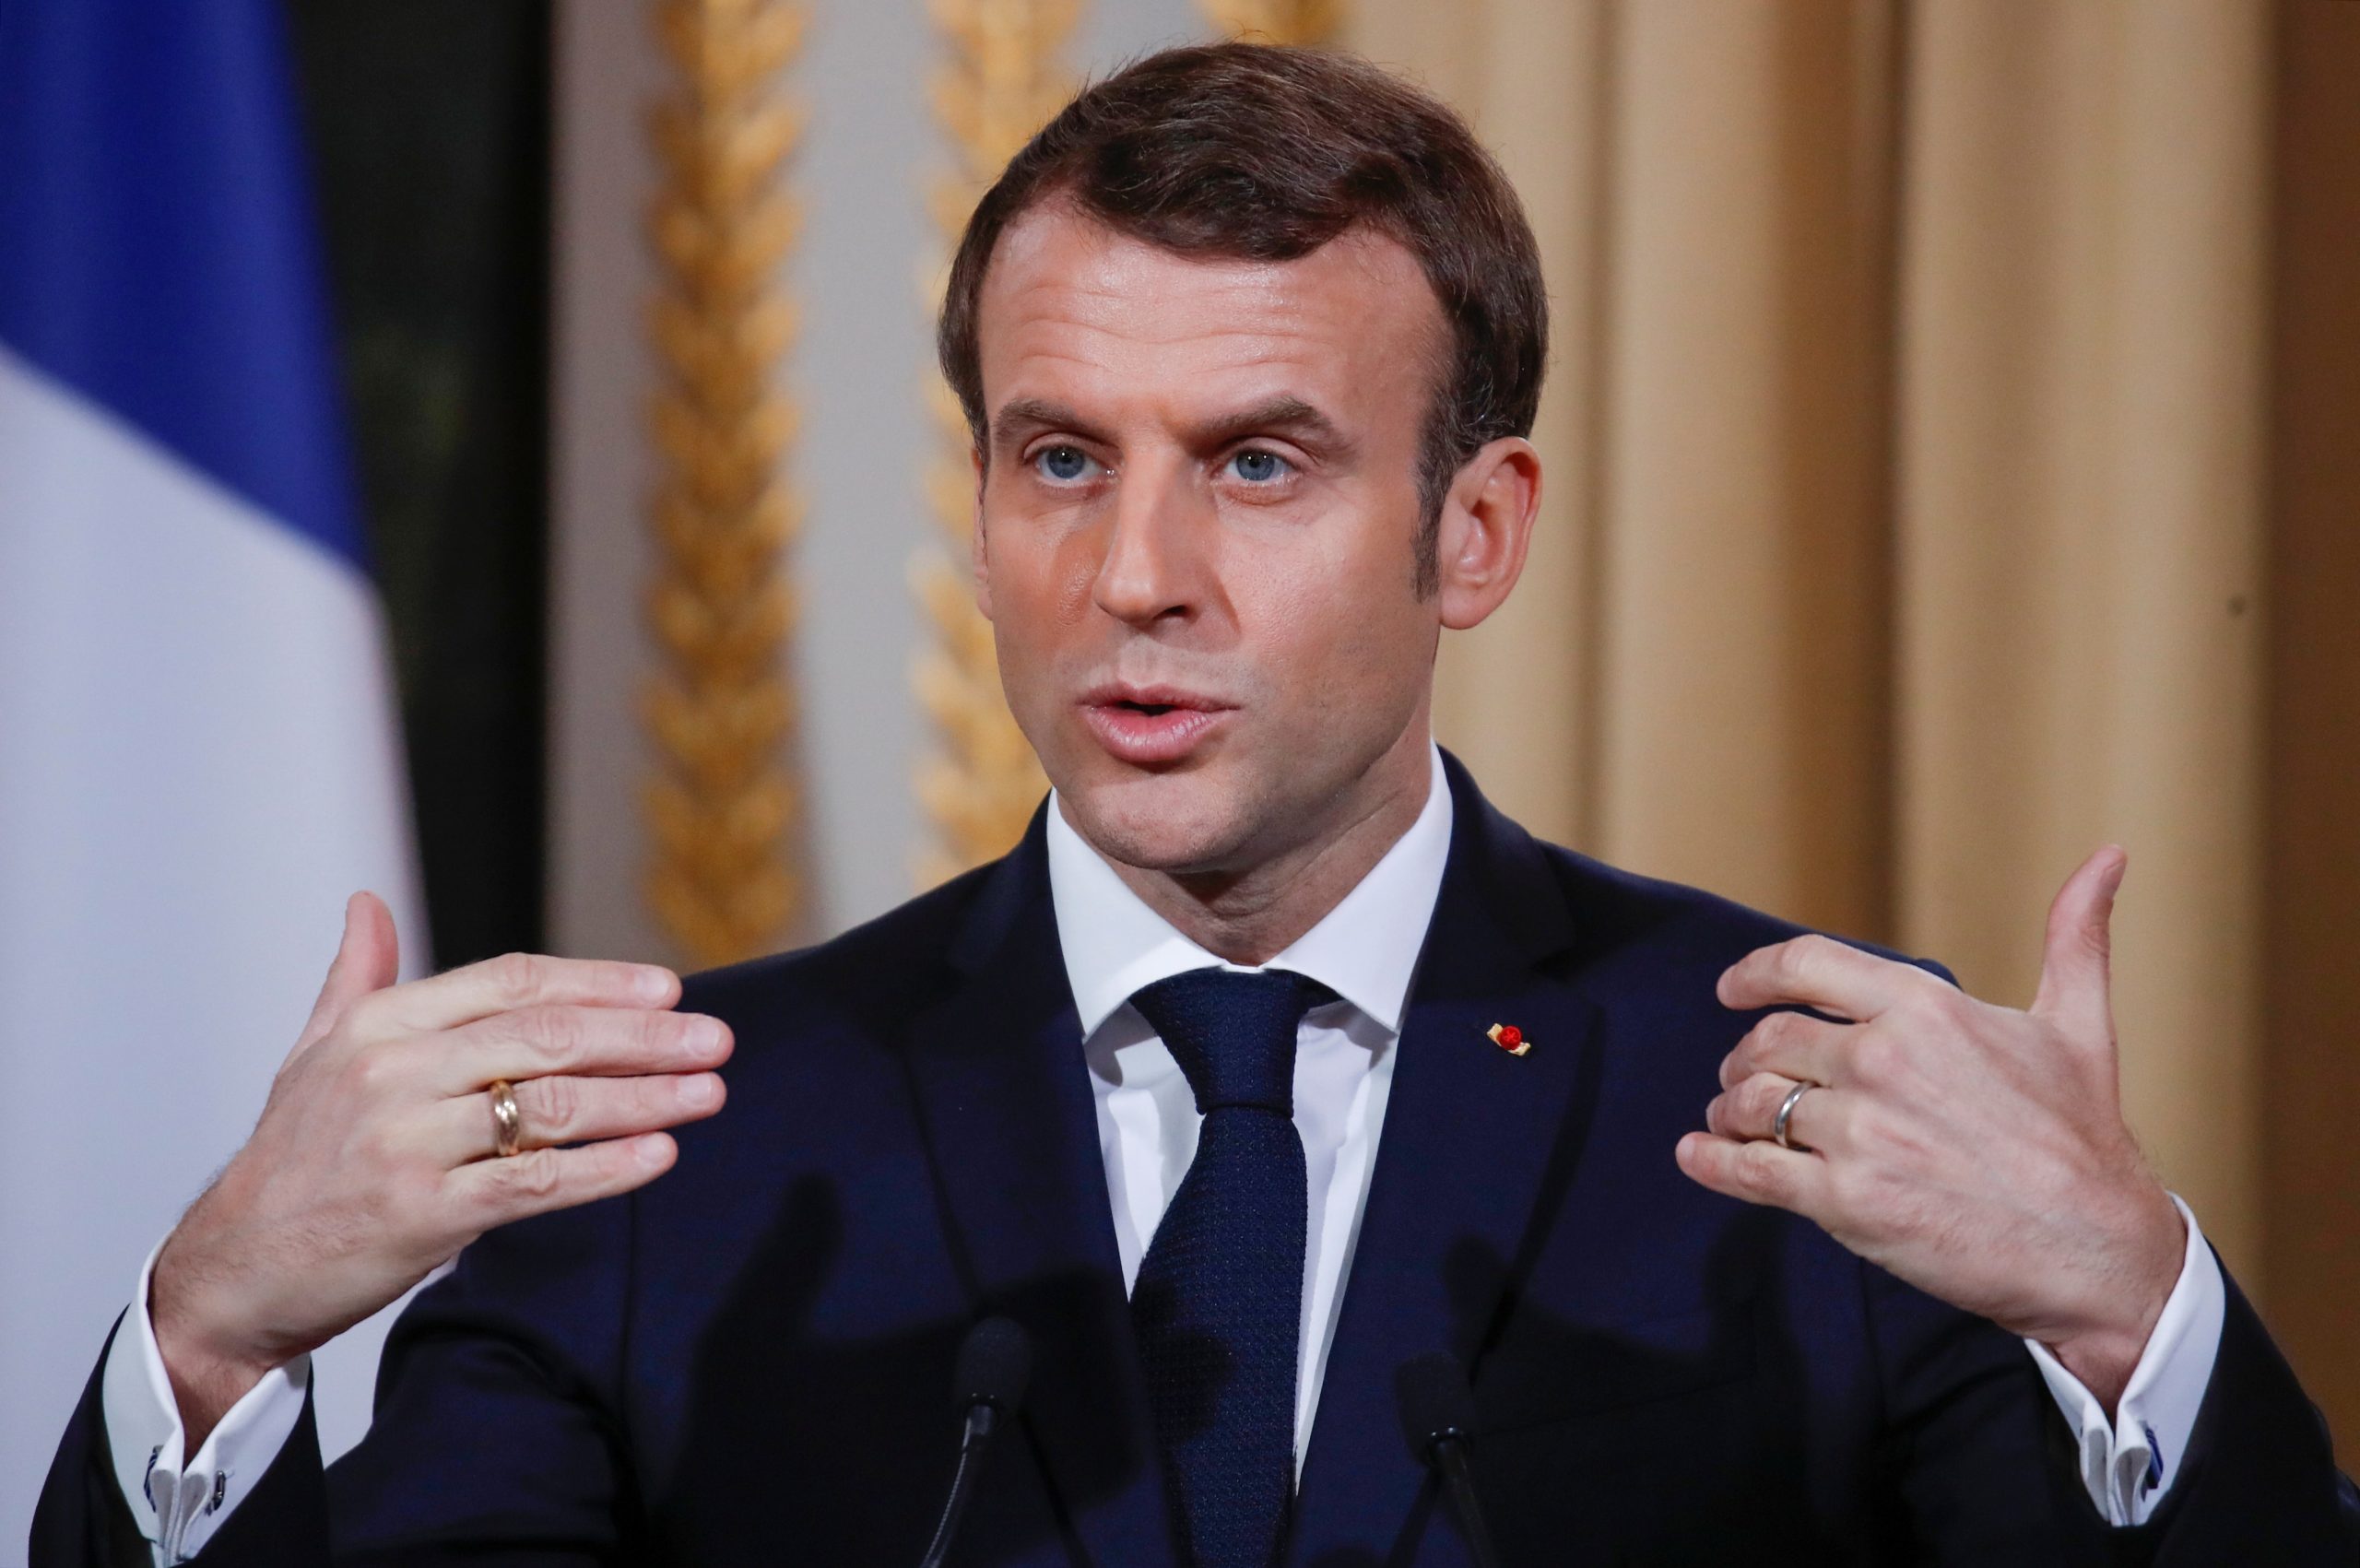 Ε.Mακρόν από το σημείο του μακελειού στη Νίκαια: «H Γαλλία δέχεται επίθεση – Αύριο ανακοινώνω μέτρα»